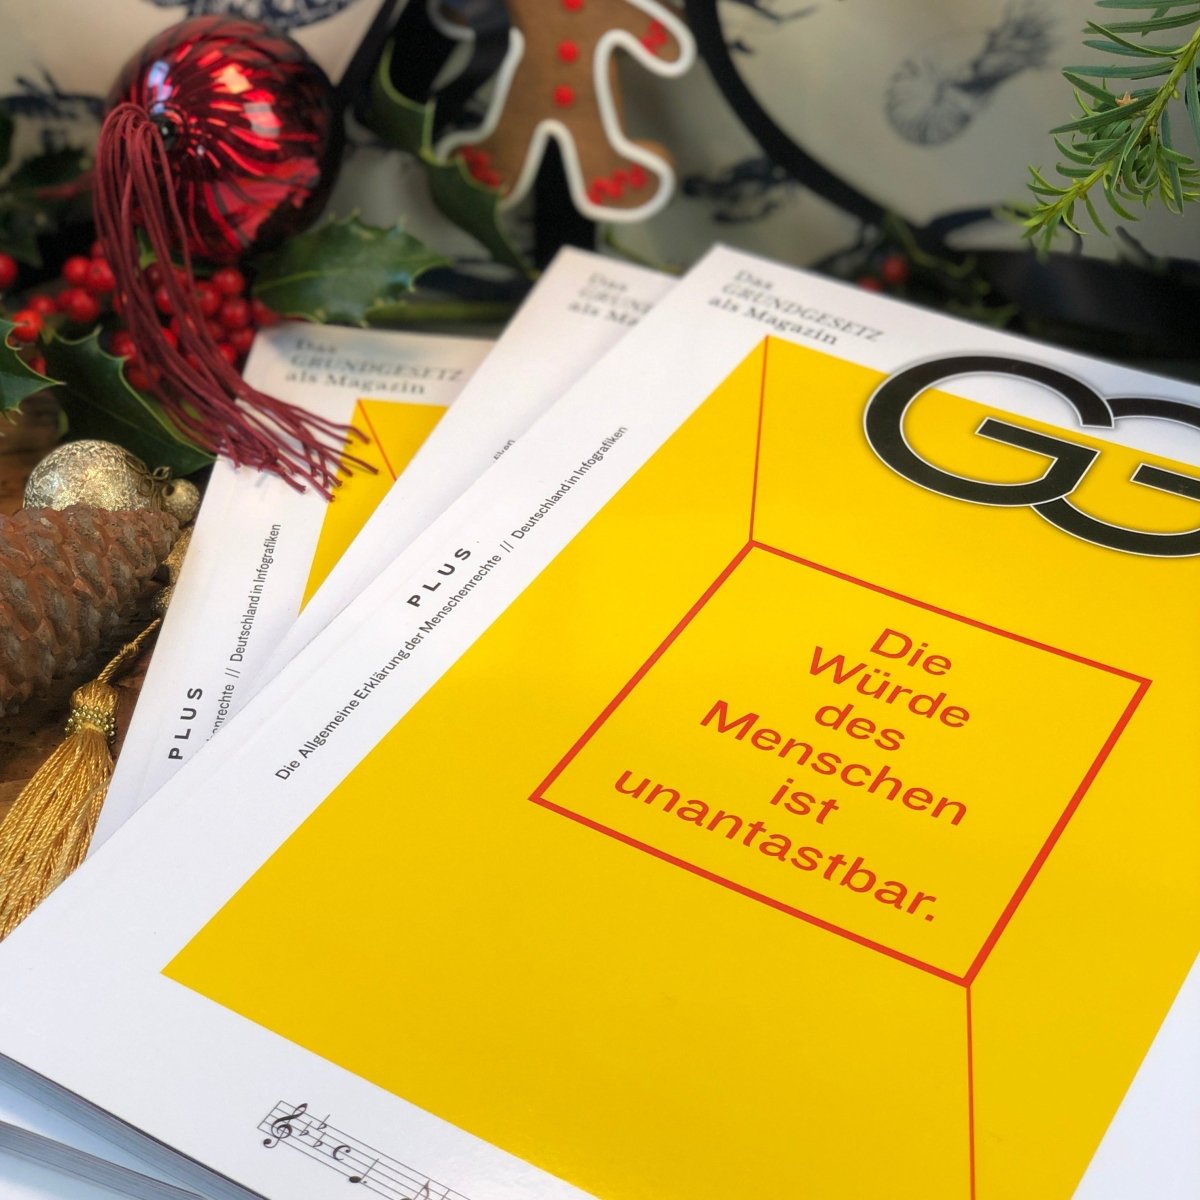 Deutschlands Grundgesetz als Magazin - Ankerherz Verlag